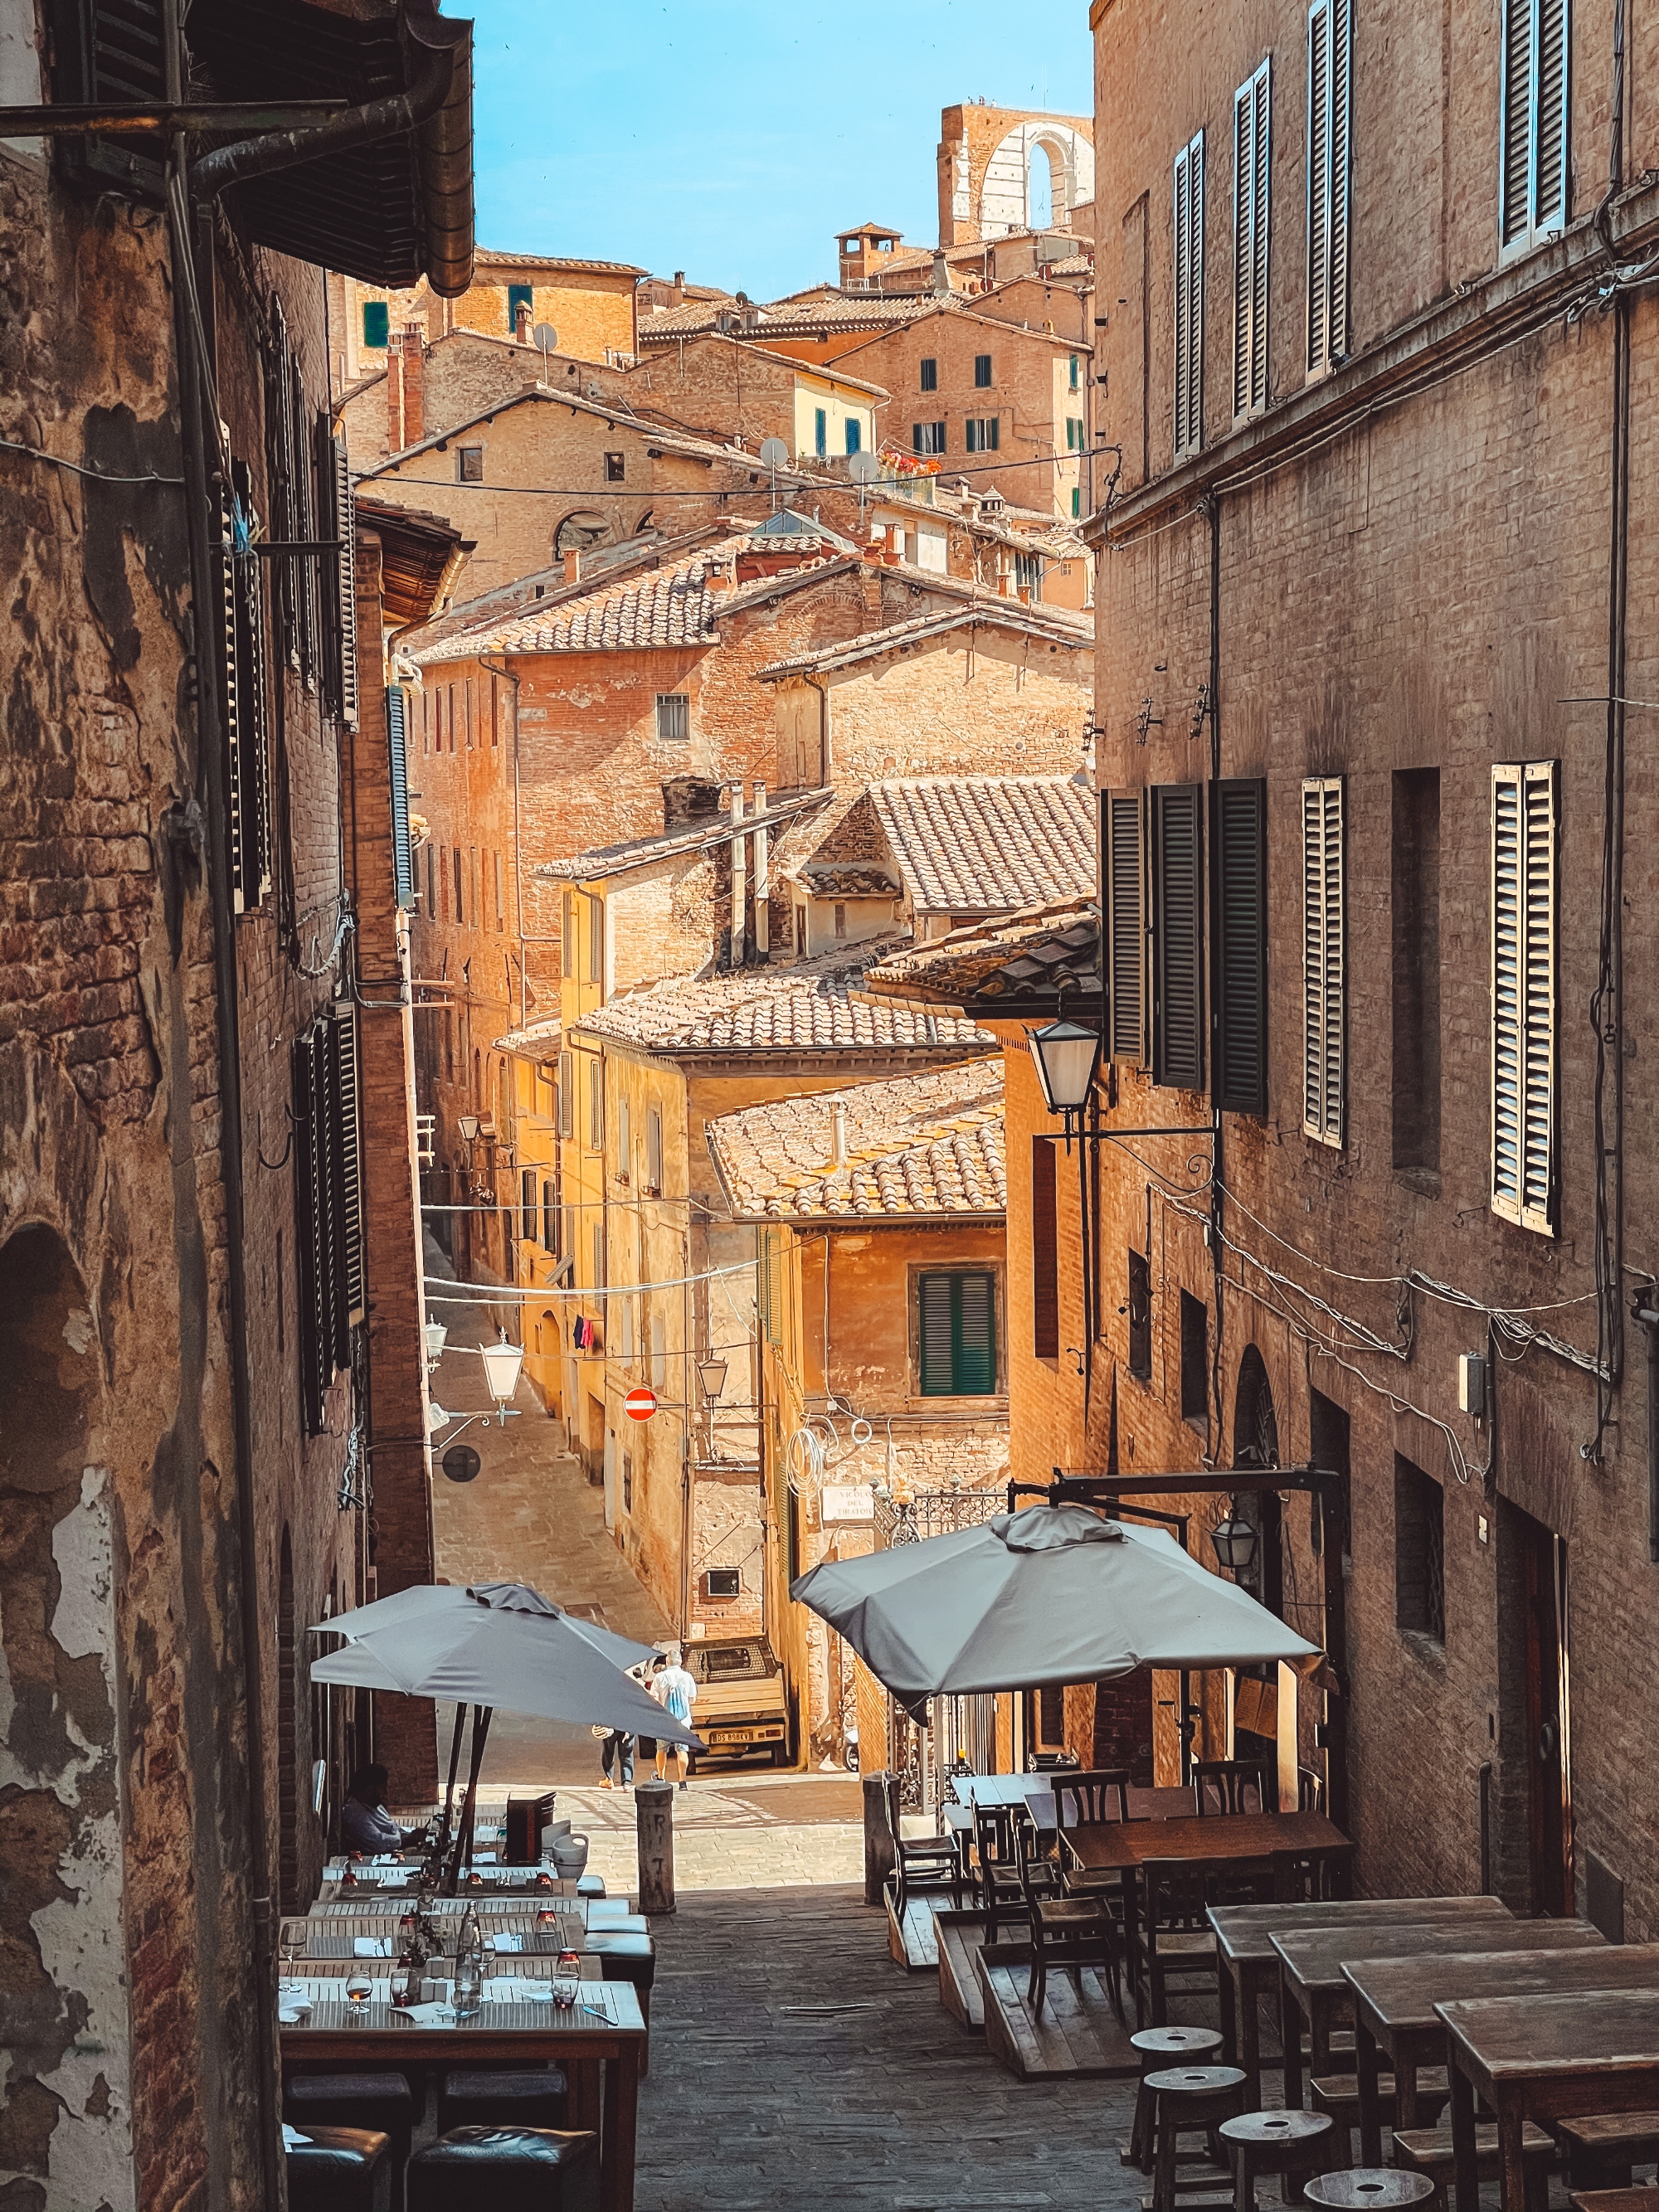 Una visita guiada para descubrir la historia de Siena y su patrimonio artístico y cultural